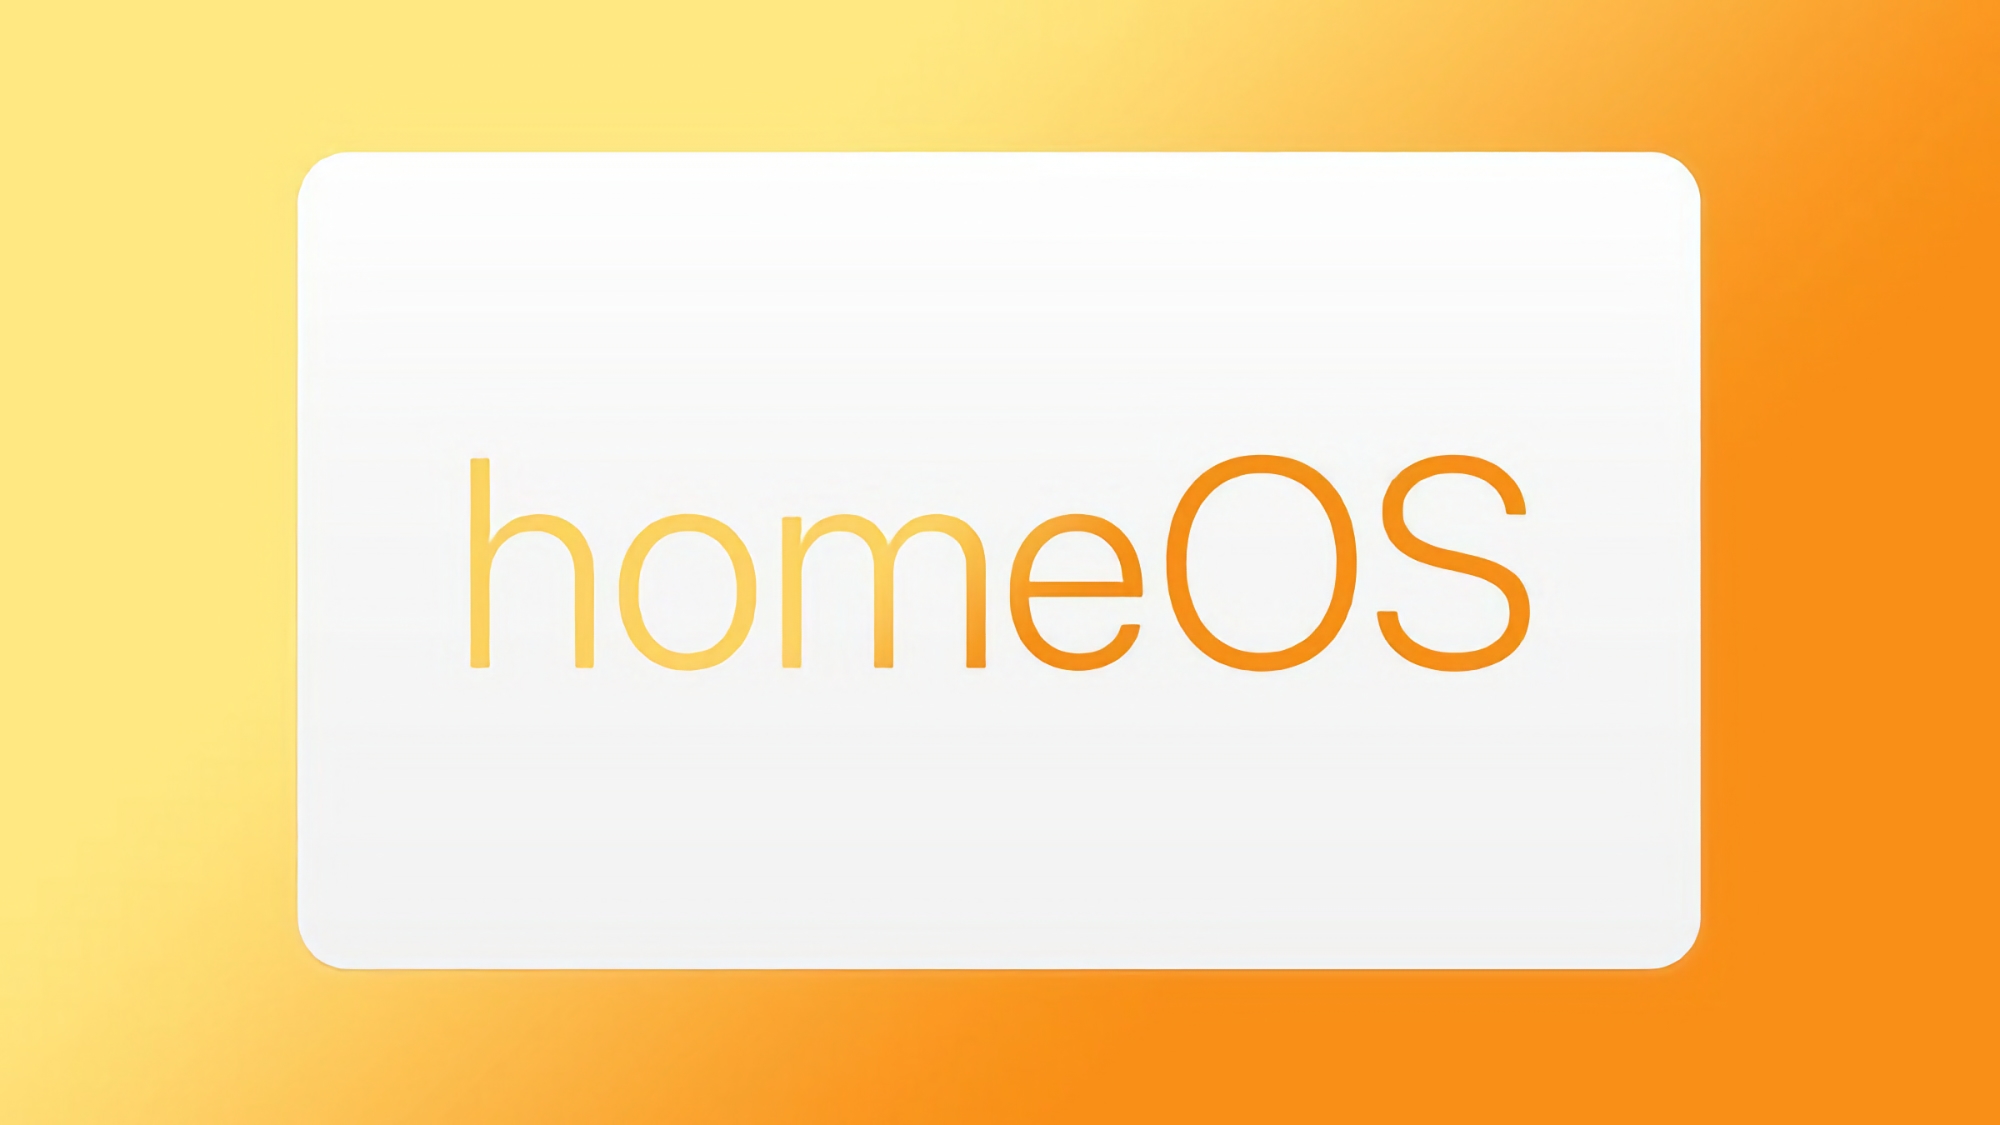 W kodzie wersji beta tvOS 17.4 znaleziono odniesienie do nowego systemu operacyjnego Apple homeOS